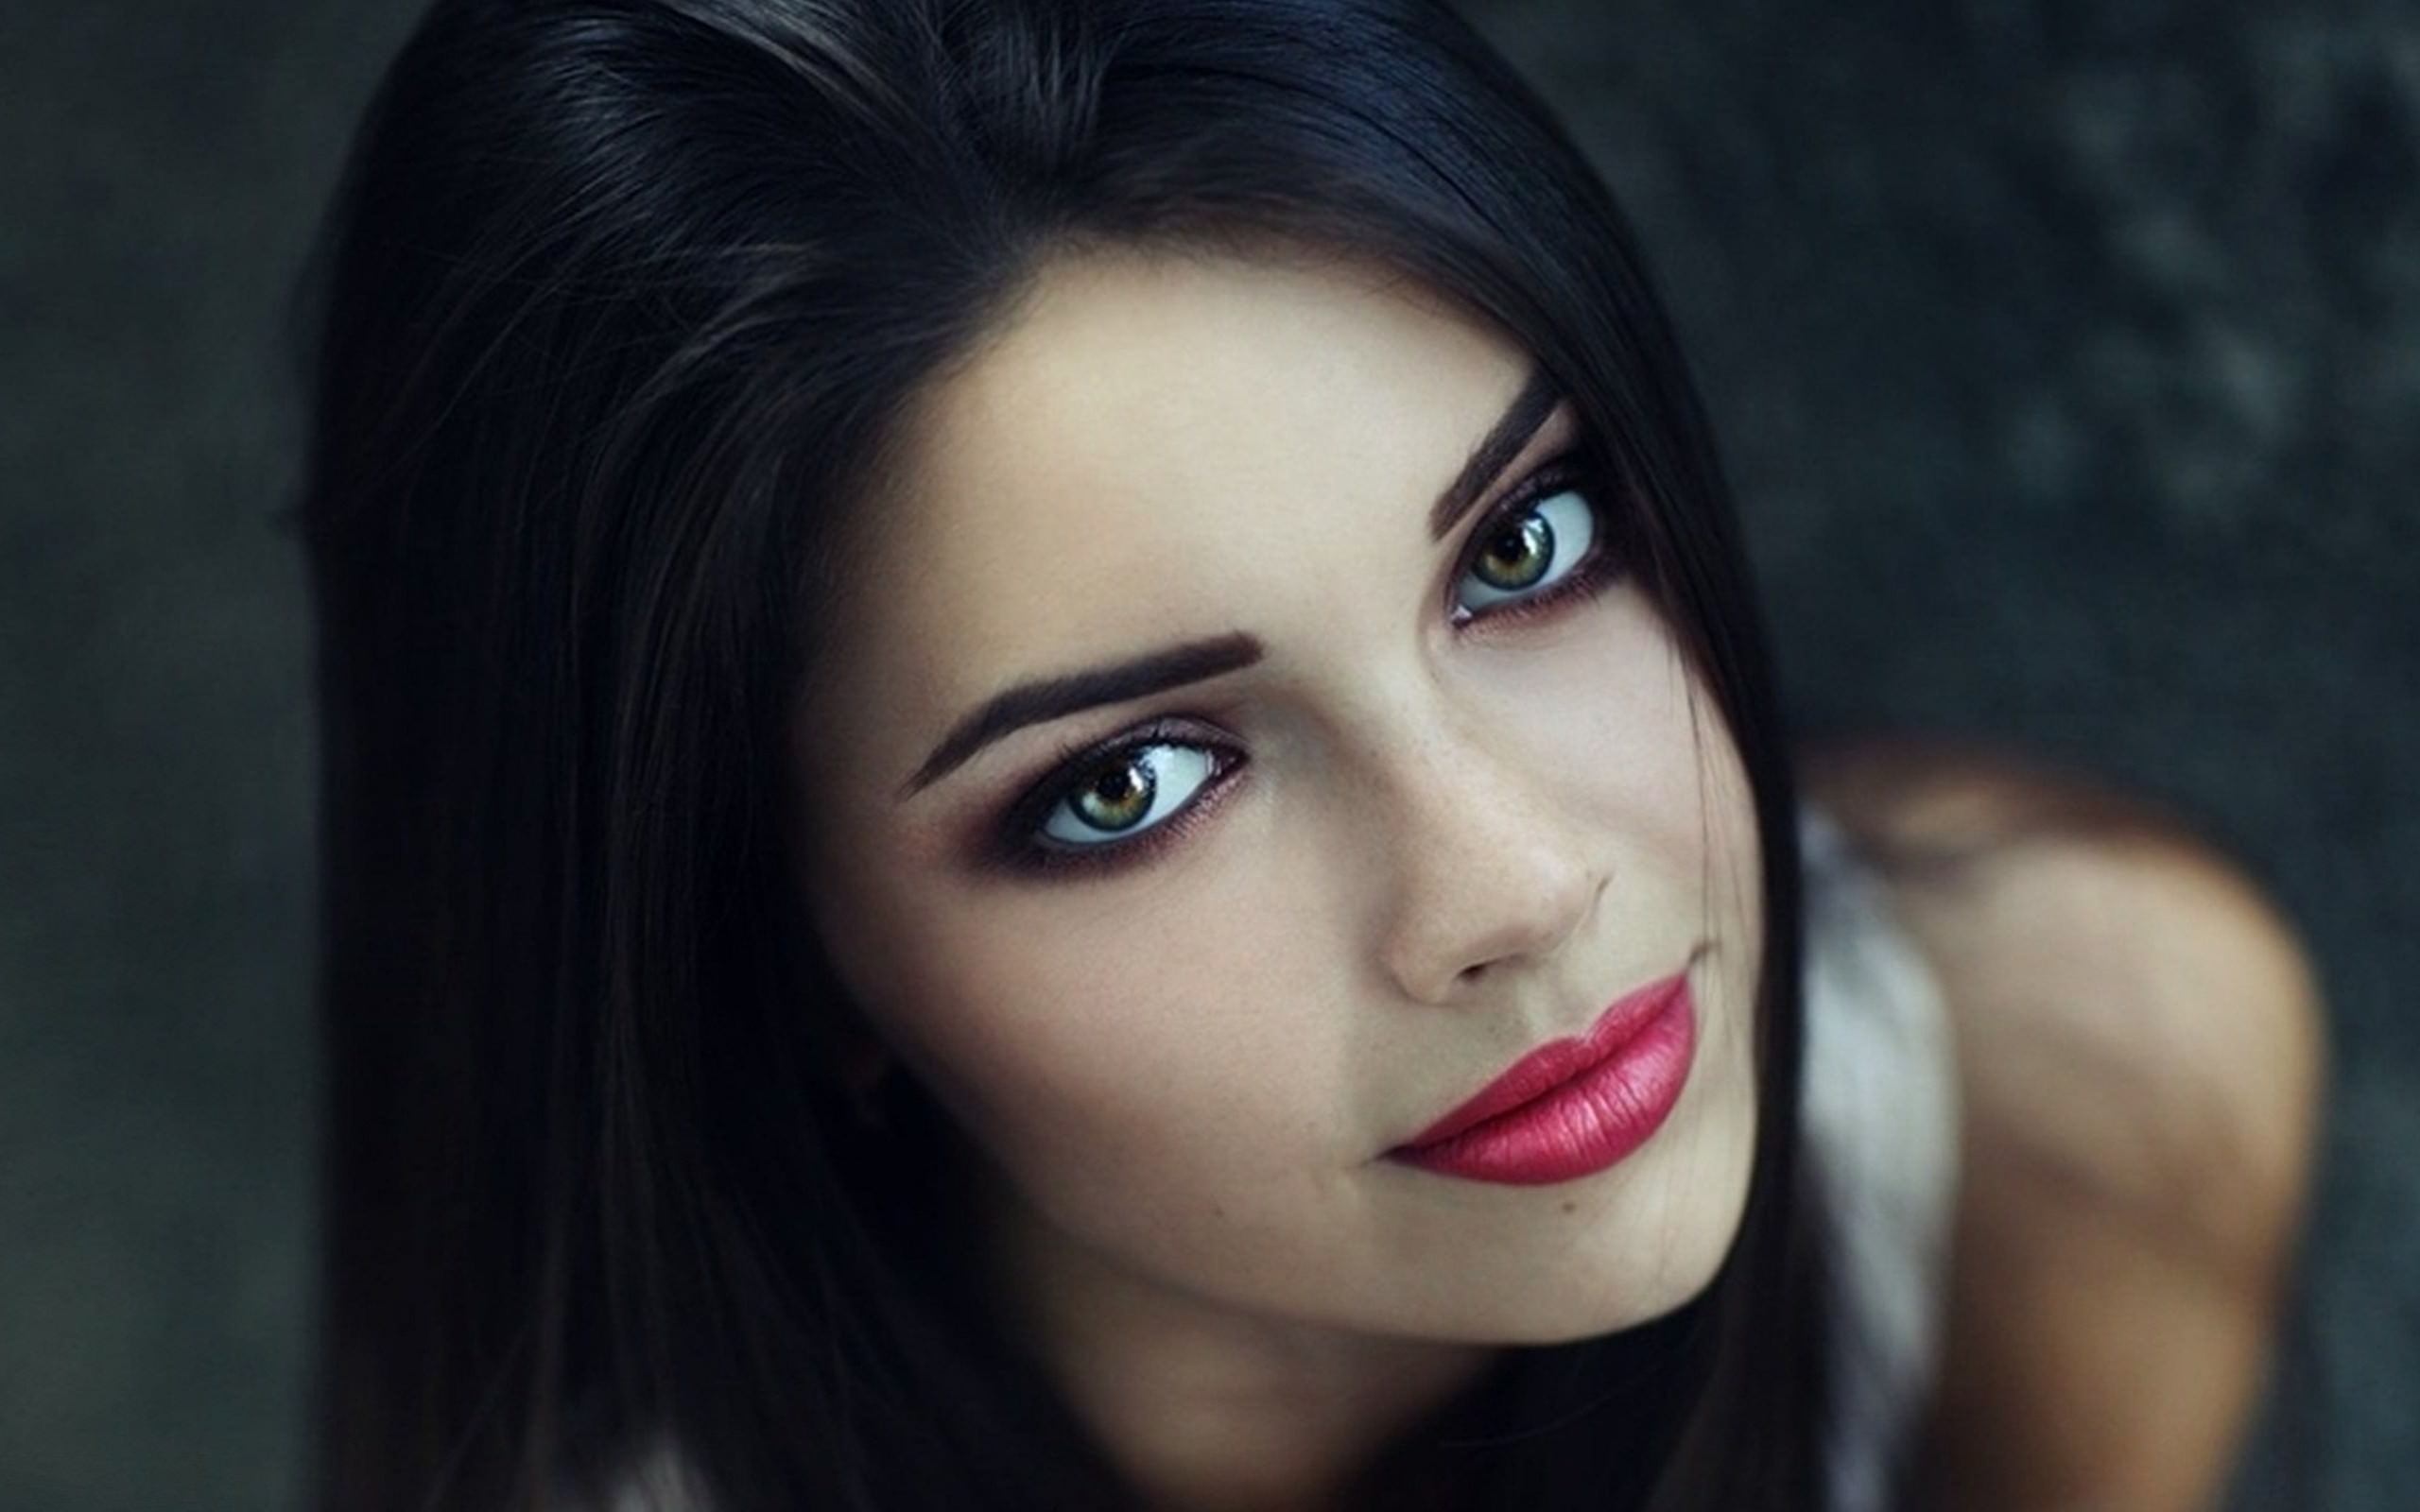 Makijaż idealny dla brunetek o zielonych oczach. Wskazówki + 15 przykładów zdjęć